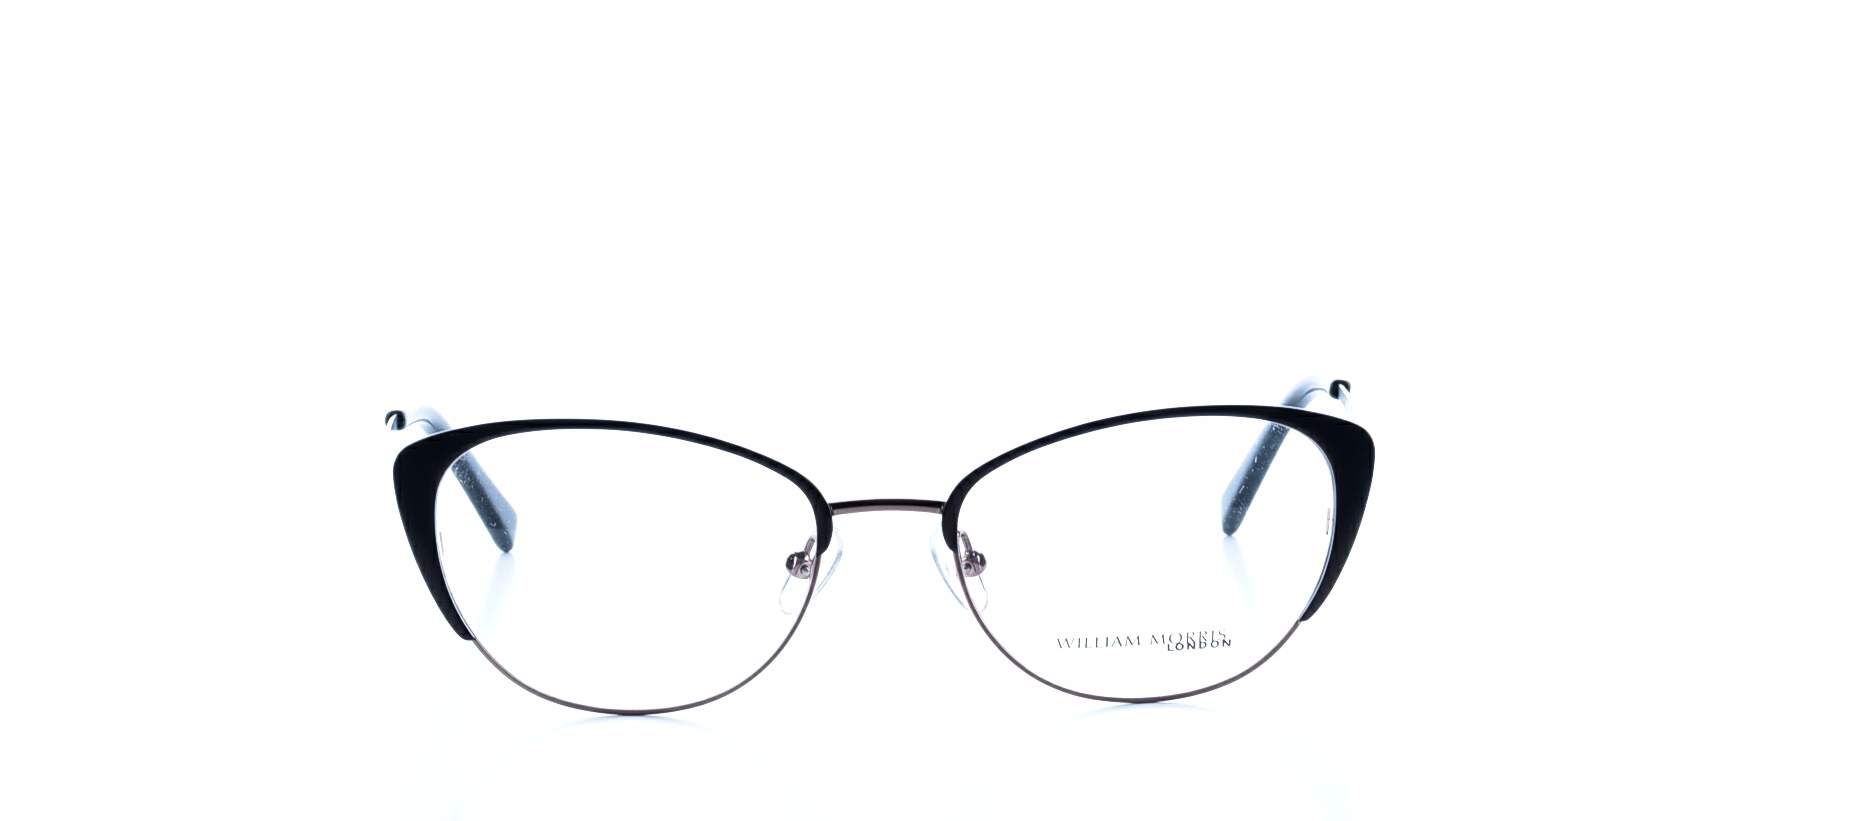 Rama ochelari vedere William Morris